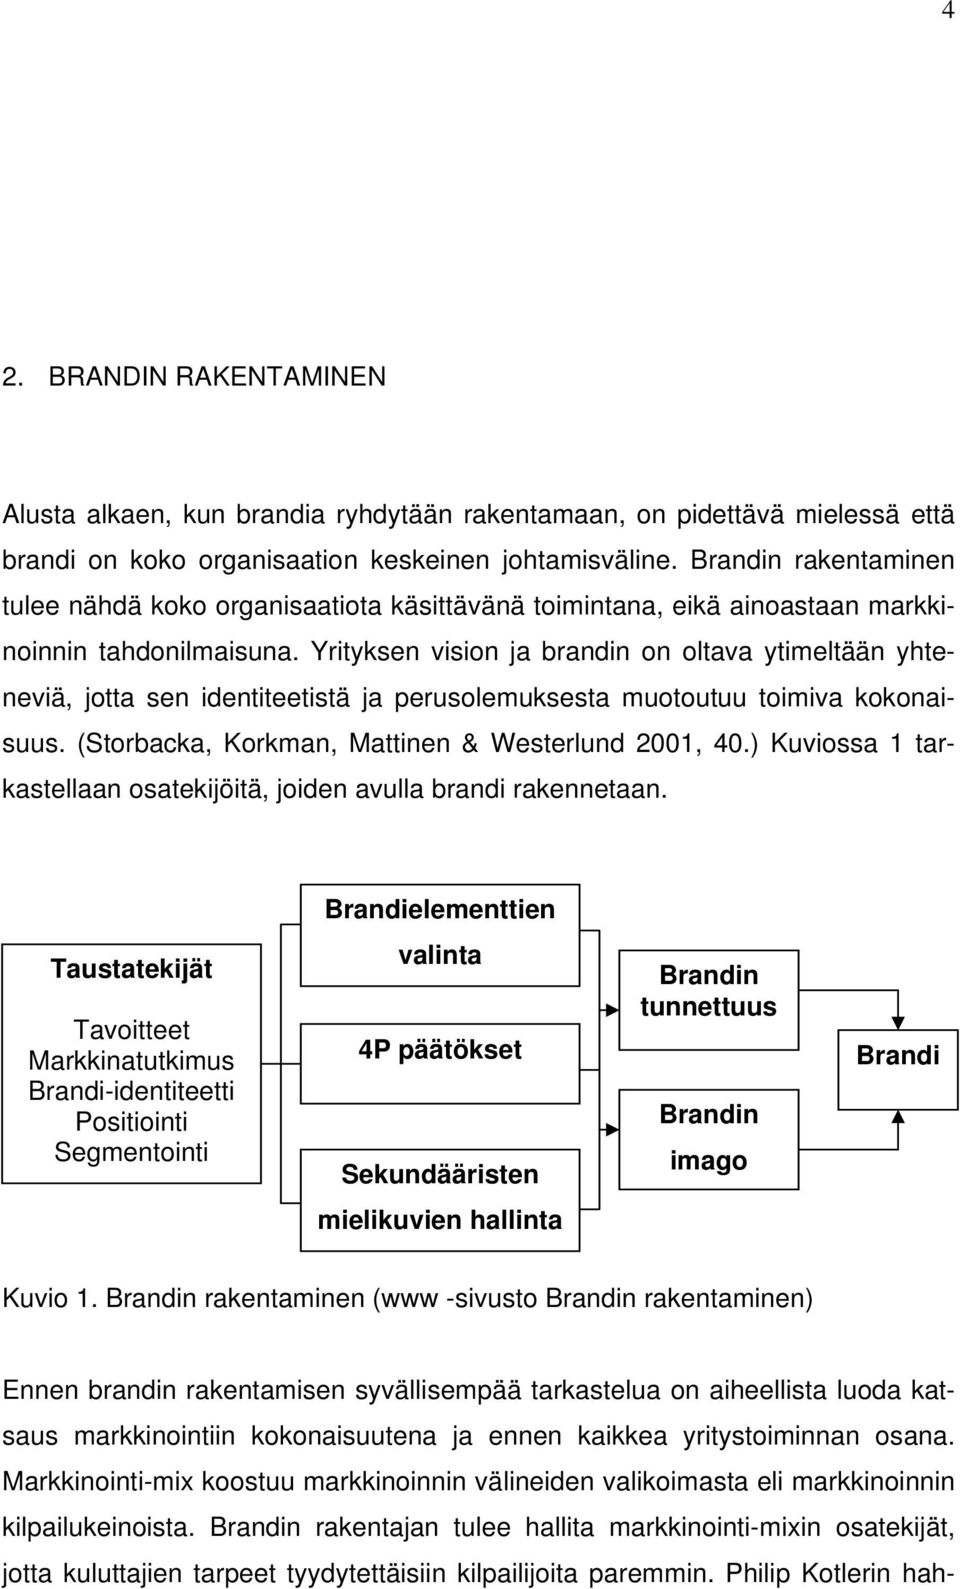 Yrityksen vision ja brandin on oltava ytimeltään yhteneviä, jotta sen identiteetistä ja perusolemuksesta muotoutuu toimiva kokonaisuus. (Storbacka, Korkman, Mattinen & Westerlund 2001, 40.